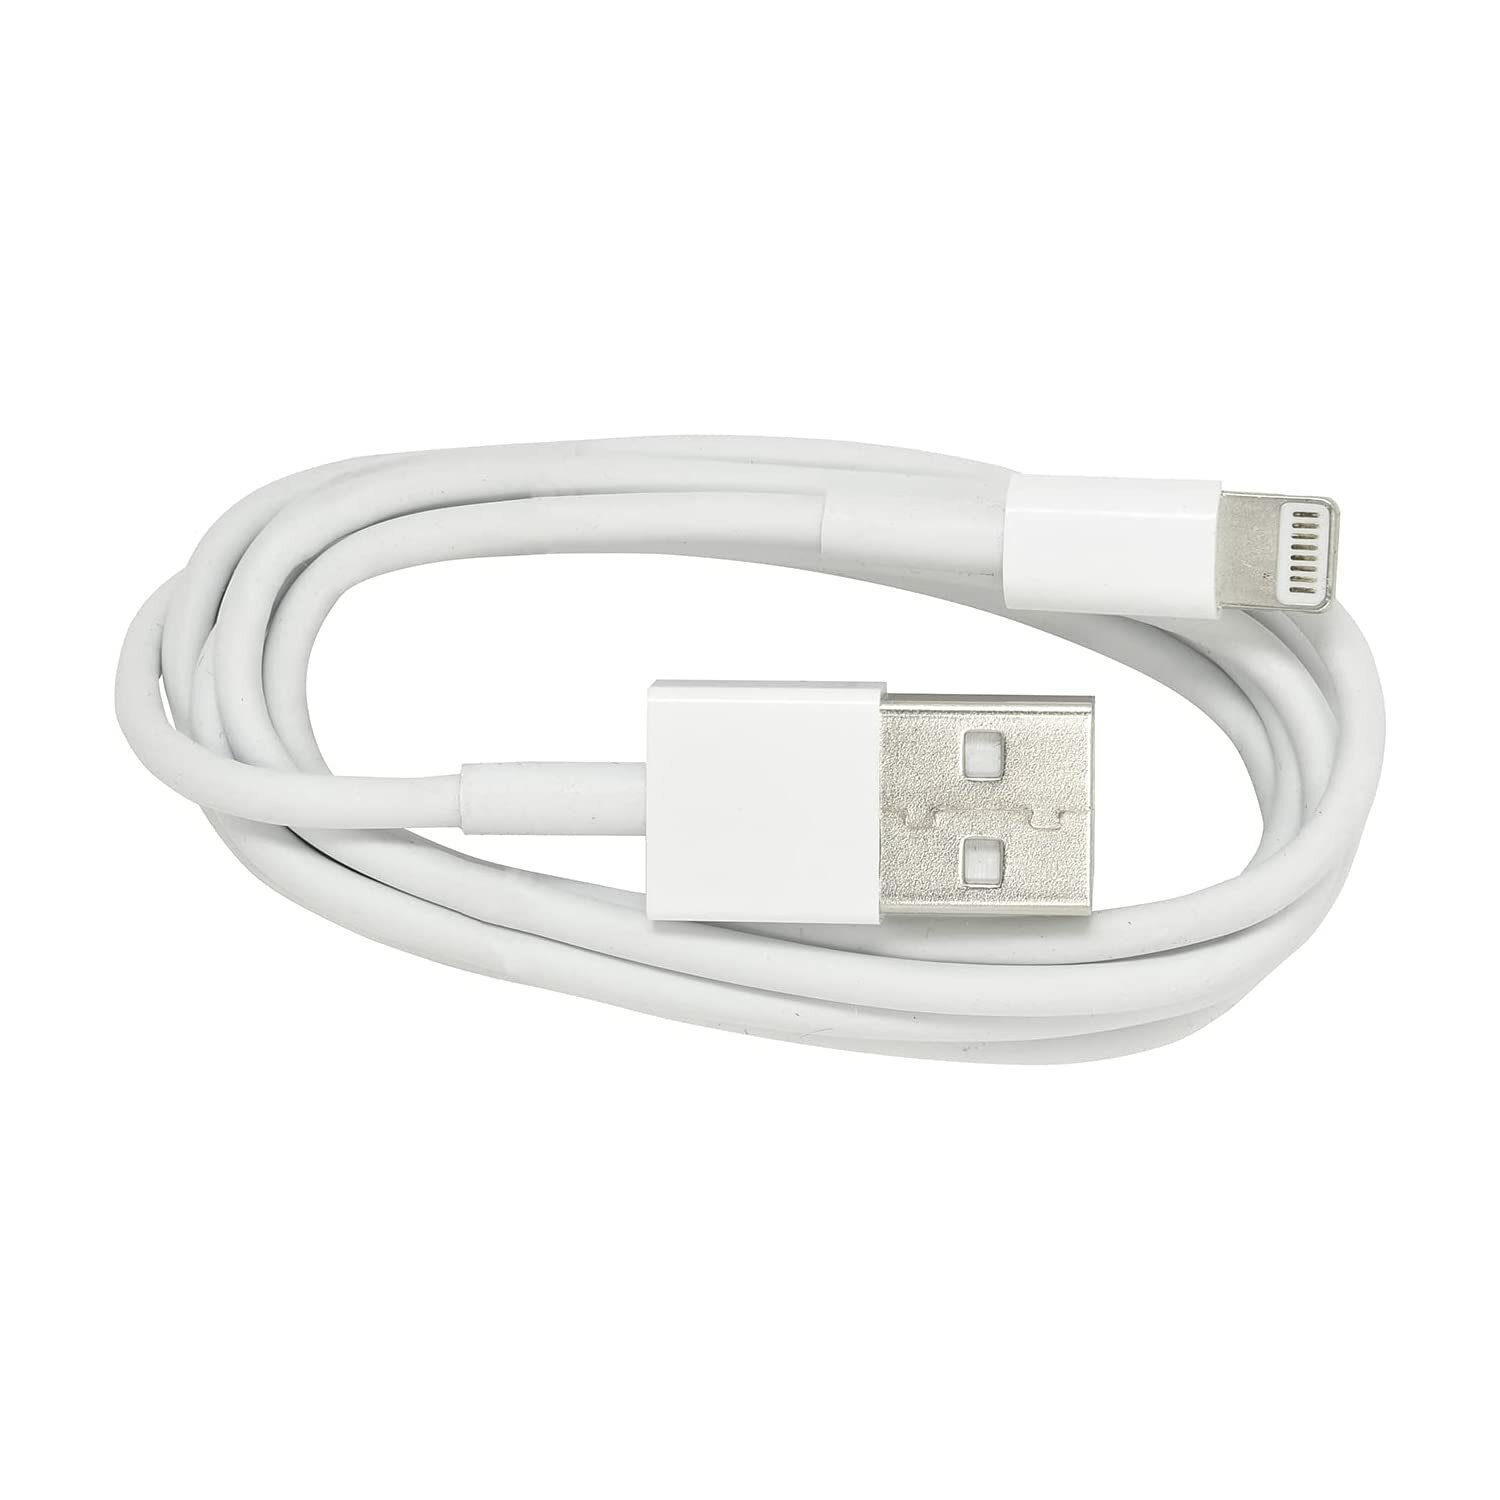 weiß, USB USB 1 iPhone Stecker HEITECH A Länge Ladekabel, iPhone Heitech Ladekabel auf Weiß Stecker m für